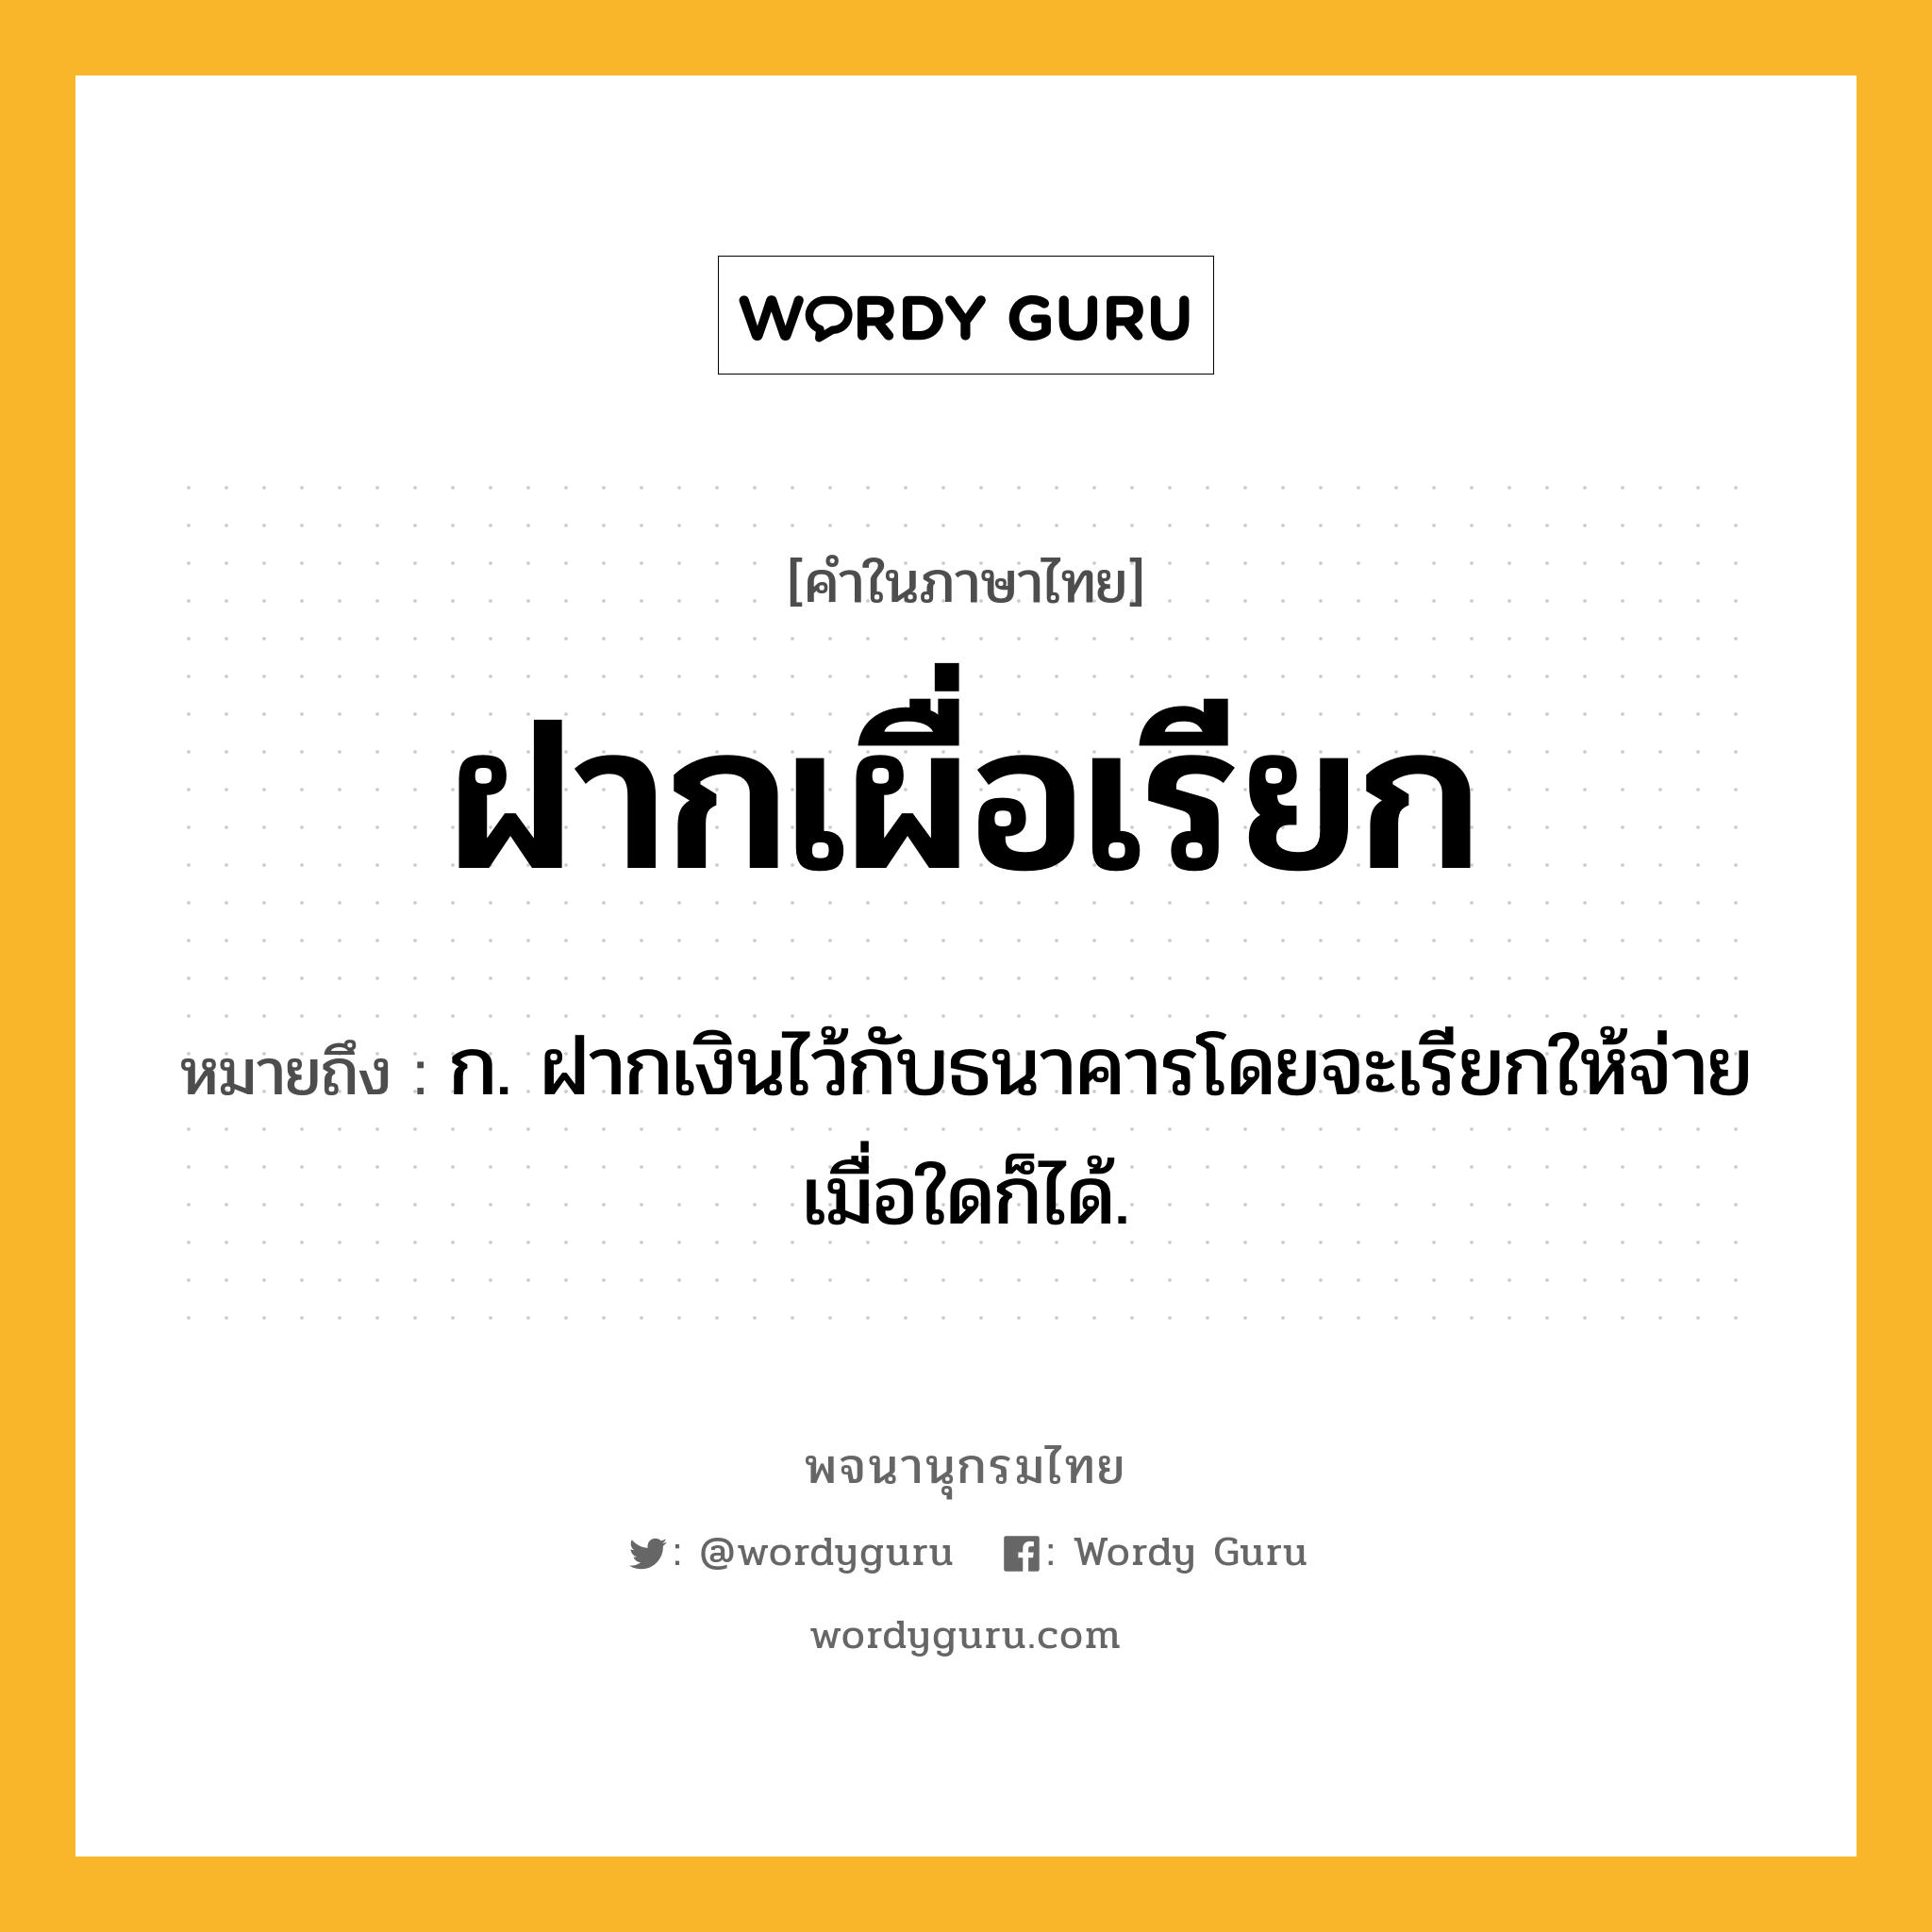 ฝากเผื่อเรียก หมายถึงอะไร?, คำในภาษาไทย ฝากเผื่อเรียก หมายถึง ก. ฝากเงินไว้กับธนาคารโดยจะเรียกให้จ่ายเมื่อใดก็ได้.